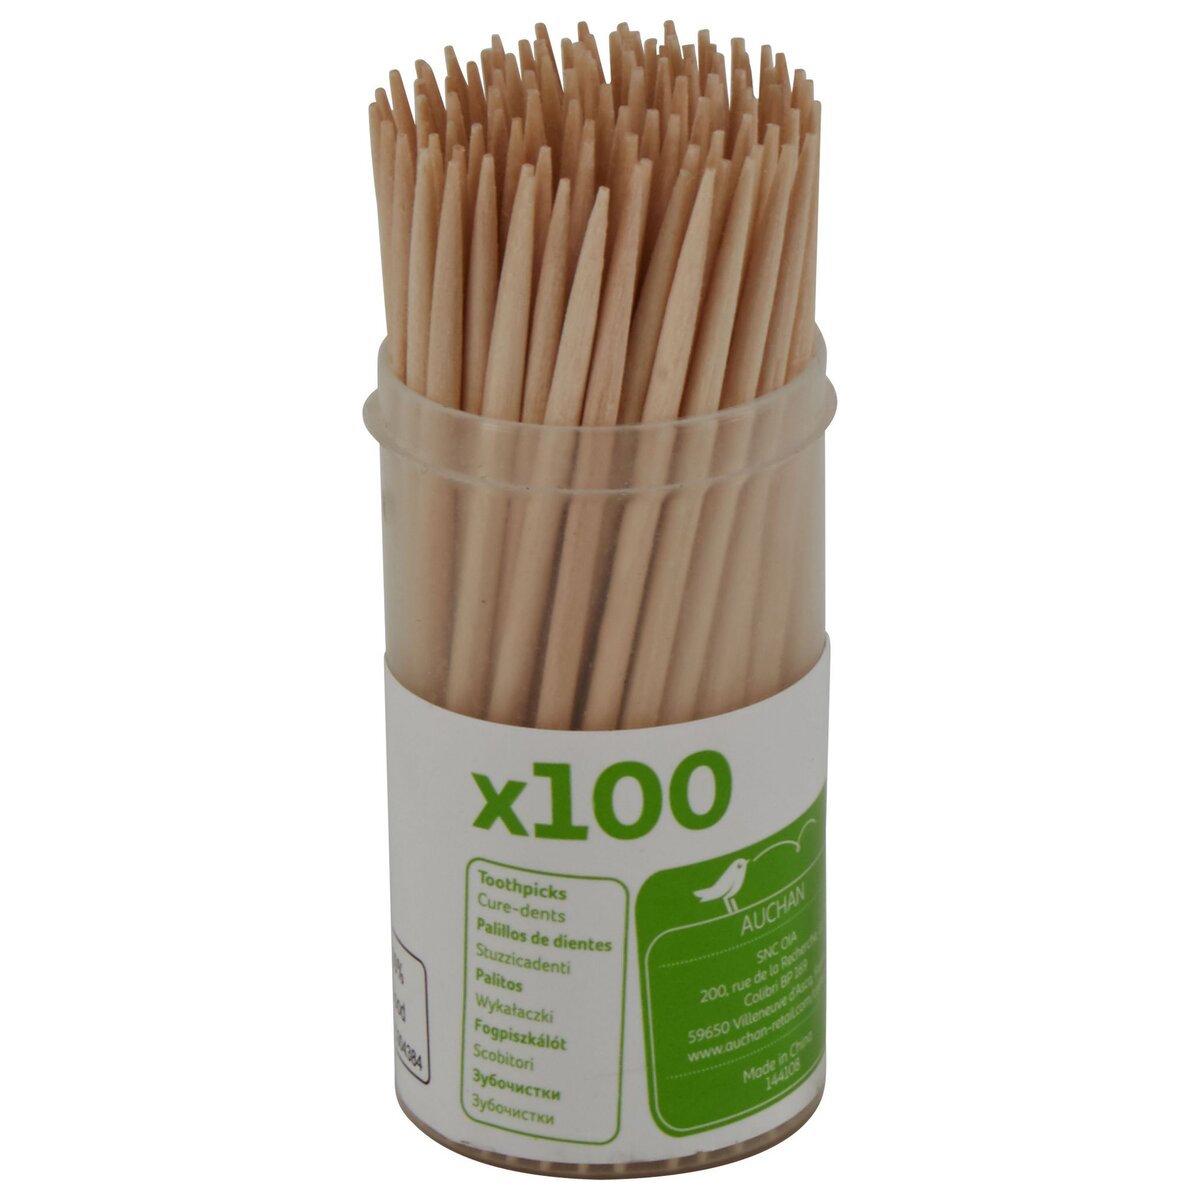 Auchan Pouce Distributeur cure-dents pique apéritif x100